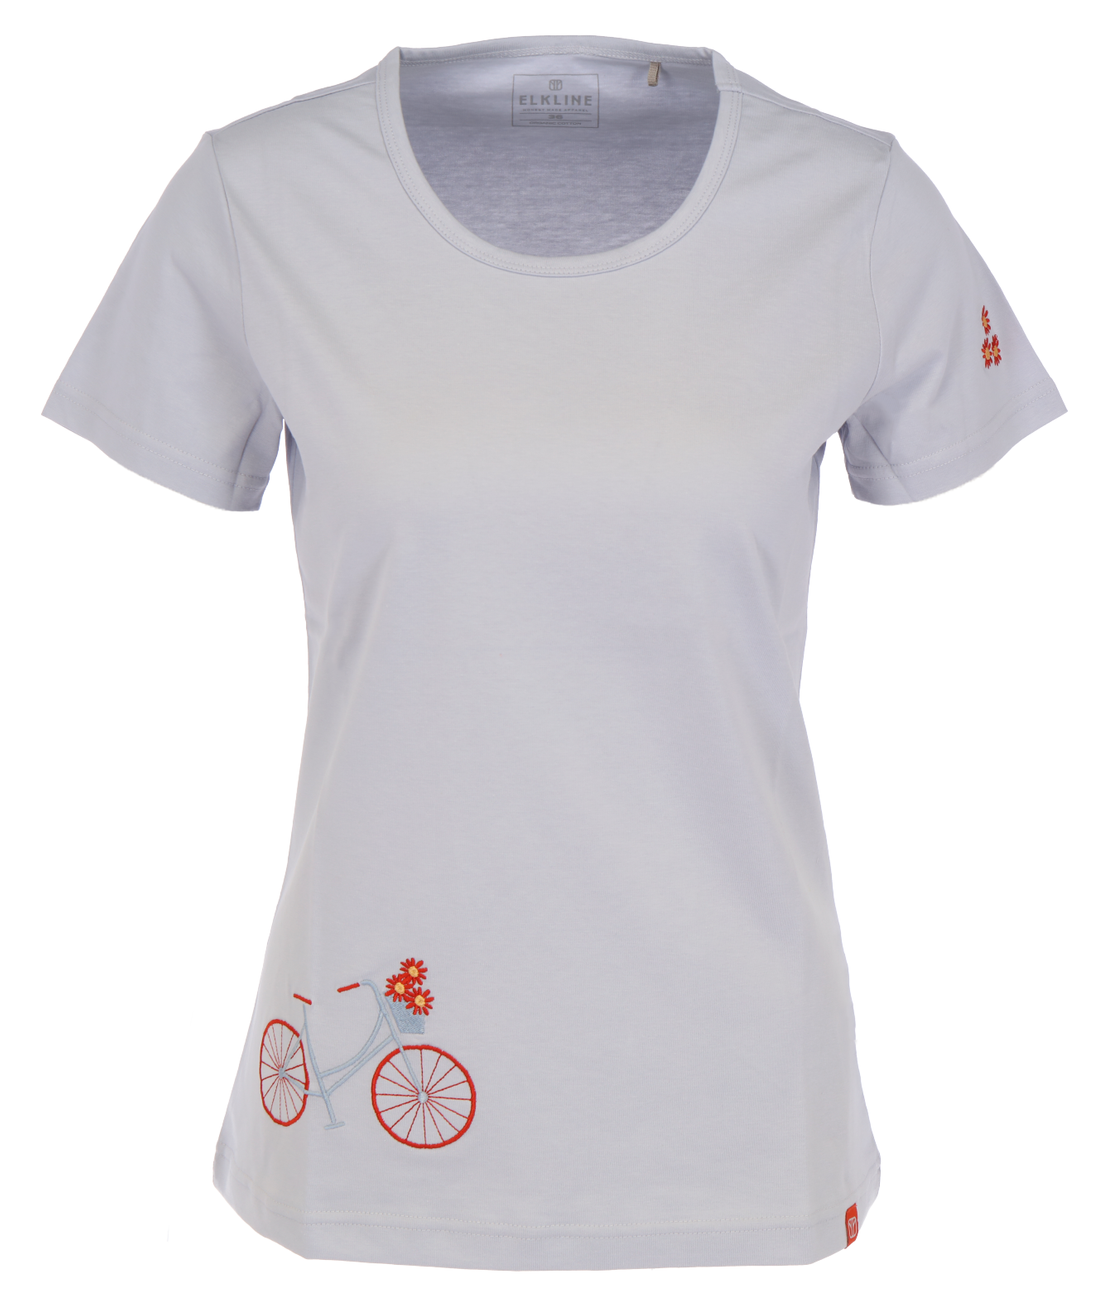 ELKLINE FLOWER BIKE Damen T-Shirt Bio-Baumwolle